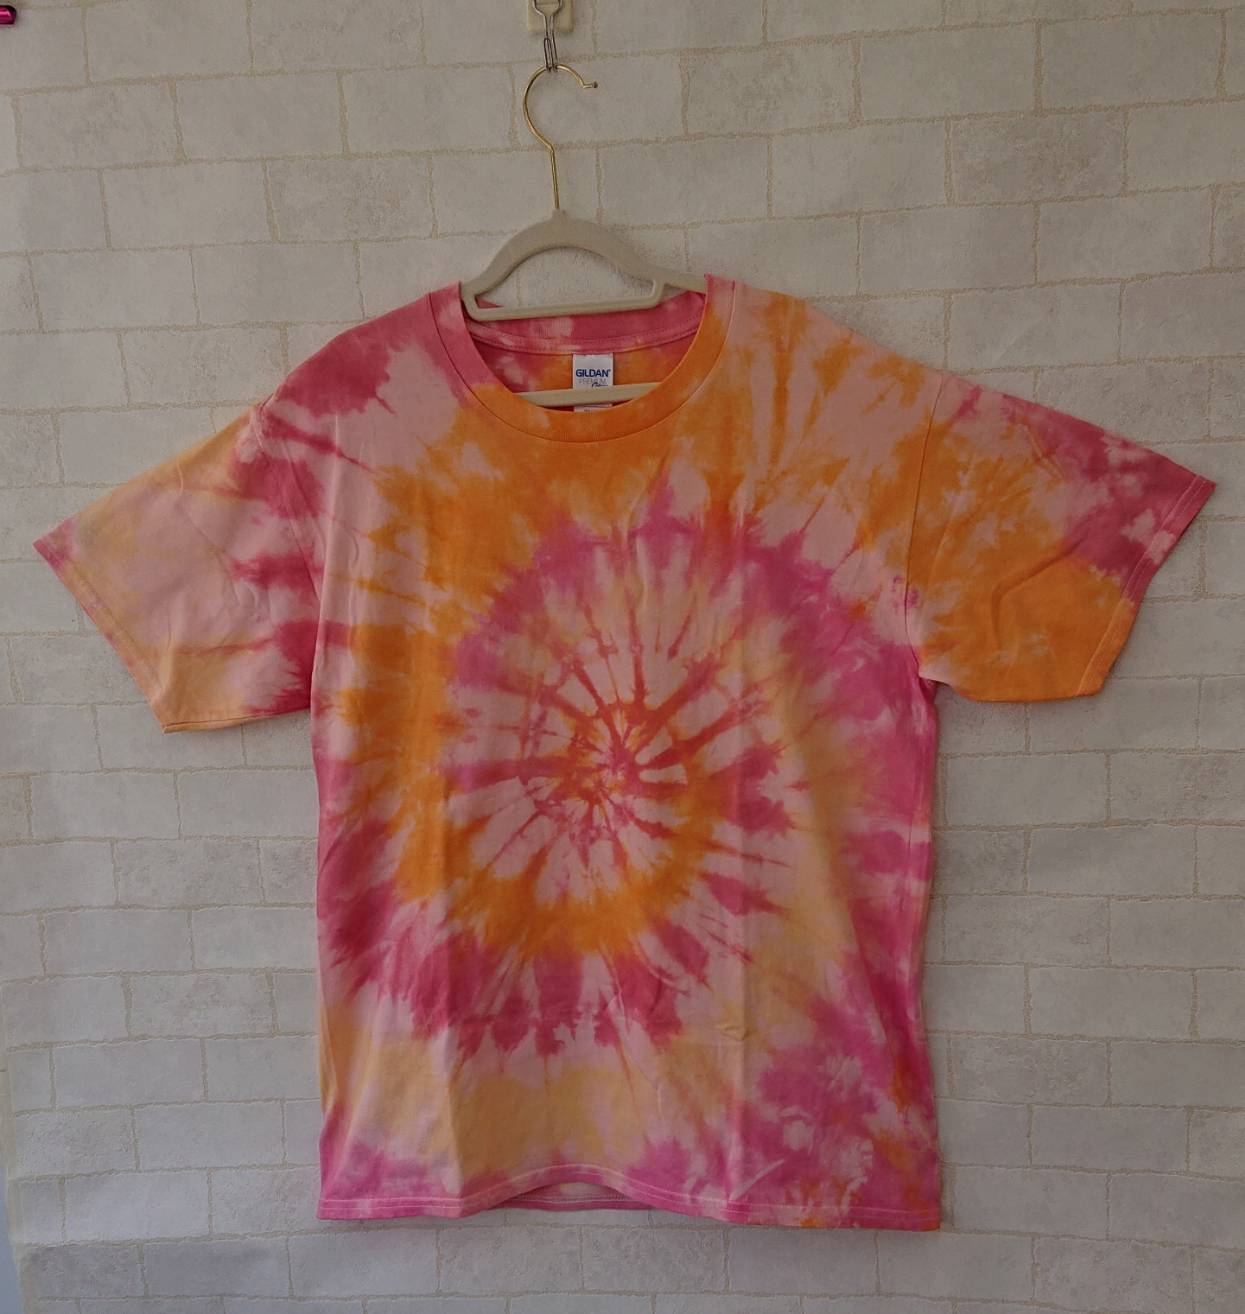 オレンジとチェリーピンクの明るいサークル模様の半袖tシャツ 男女兼用l Iichi ハンドメイド クラフト作品 手仕事品の通販